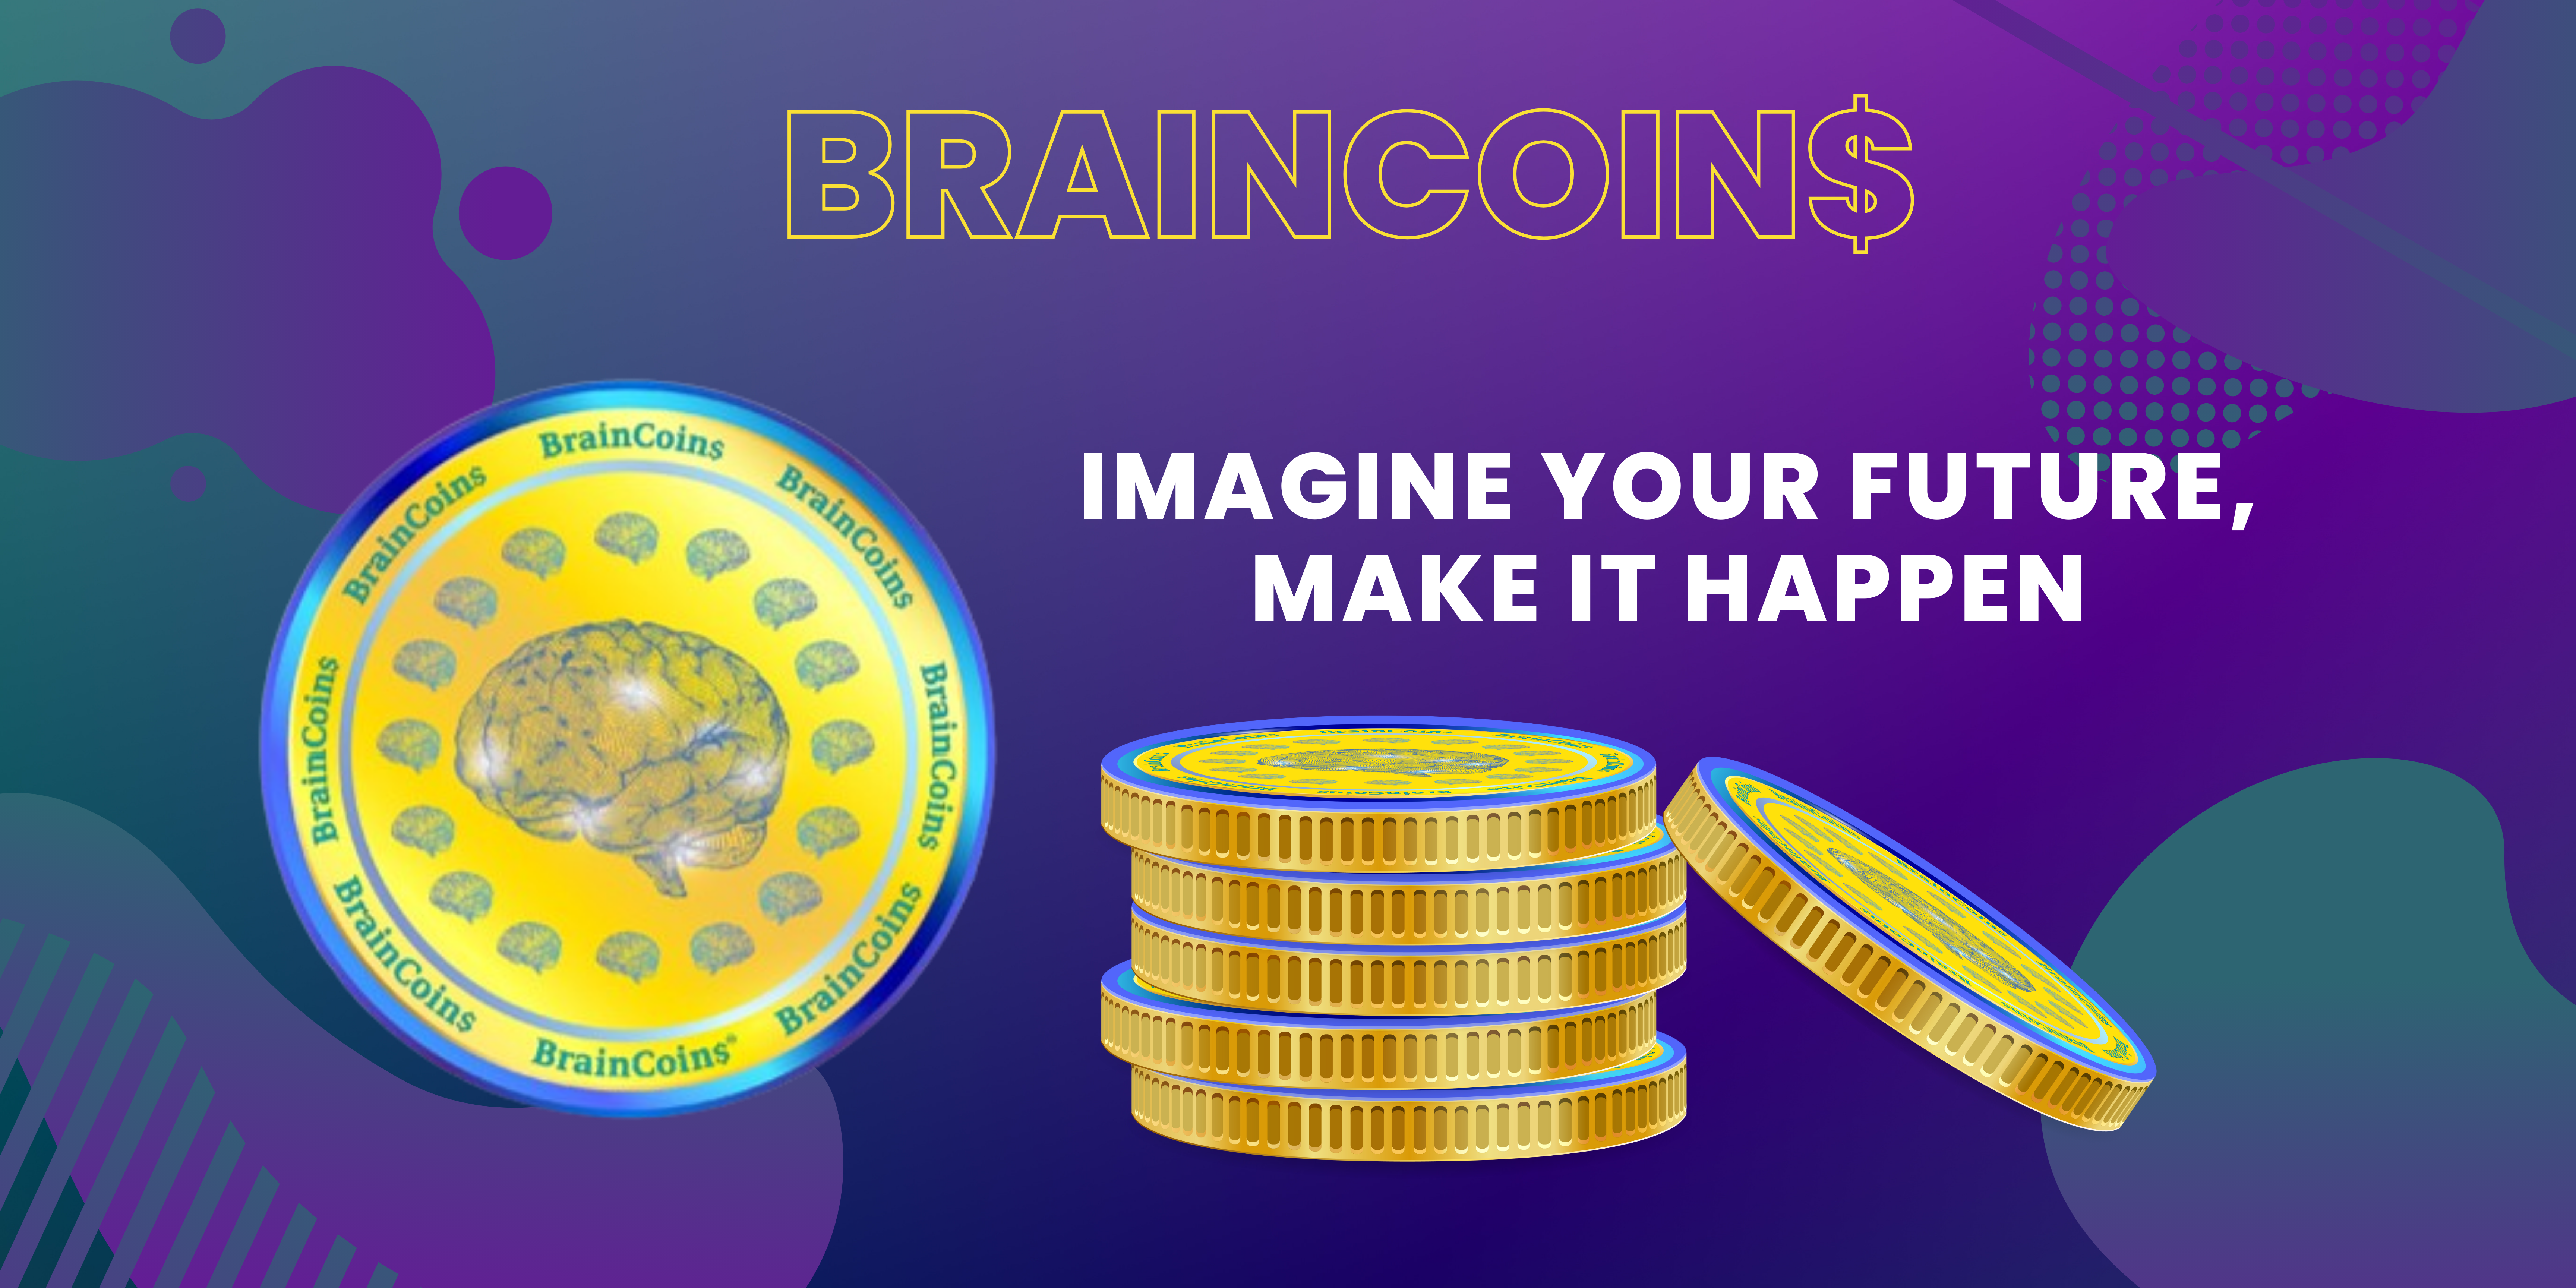 BrainCoin$ Imagine Your Future Make It Happen